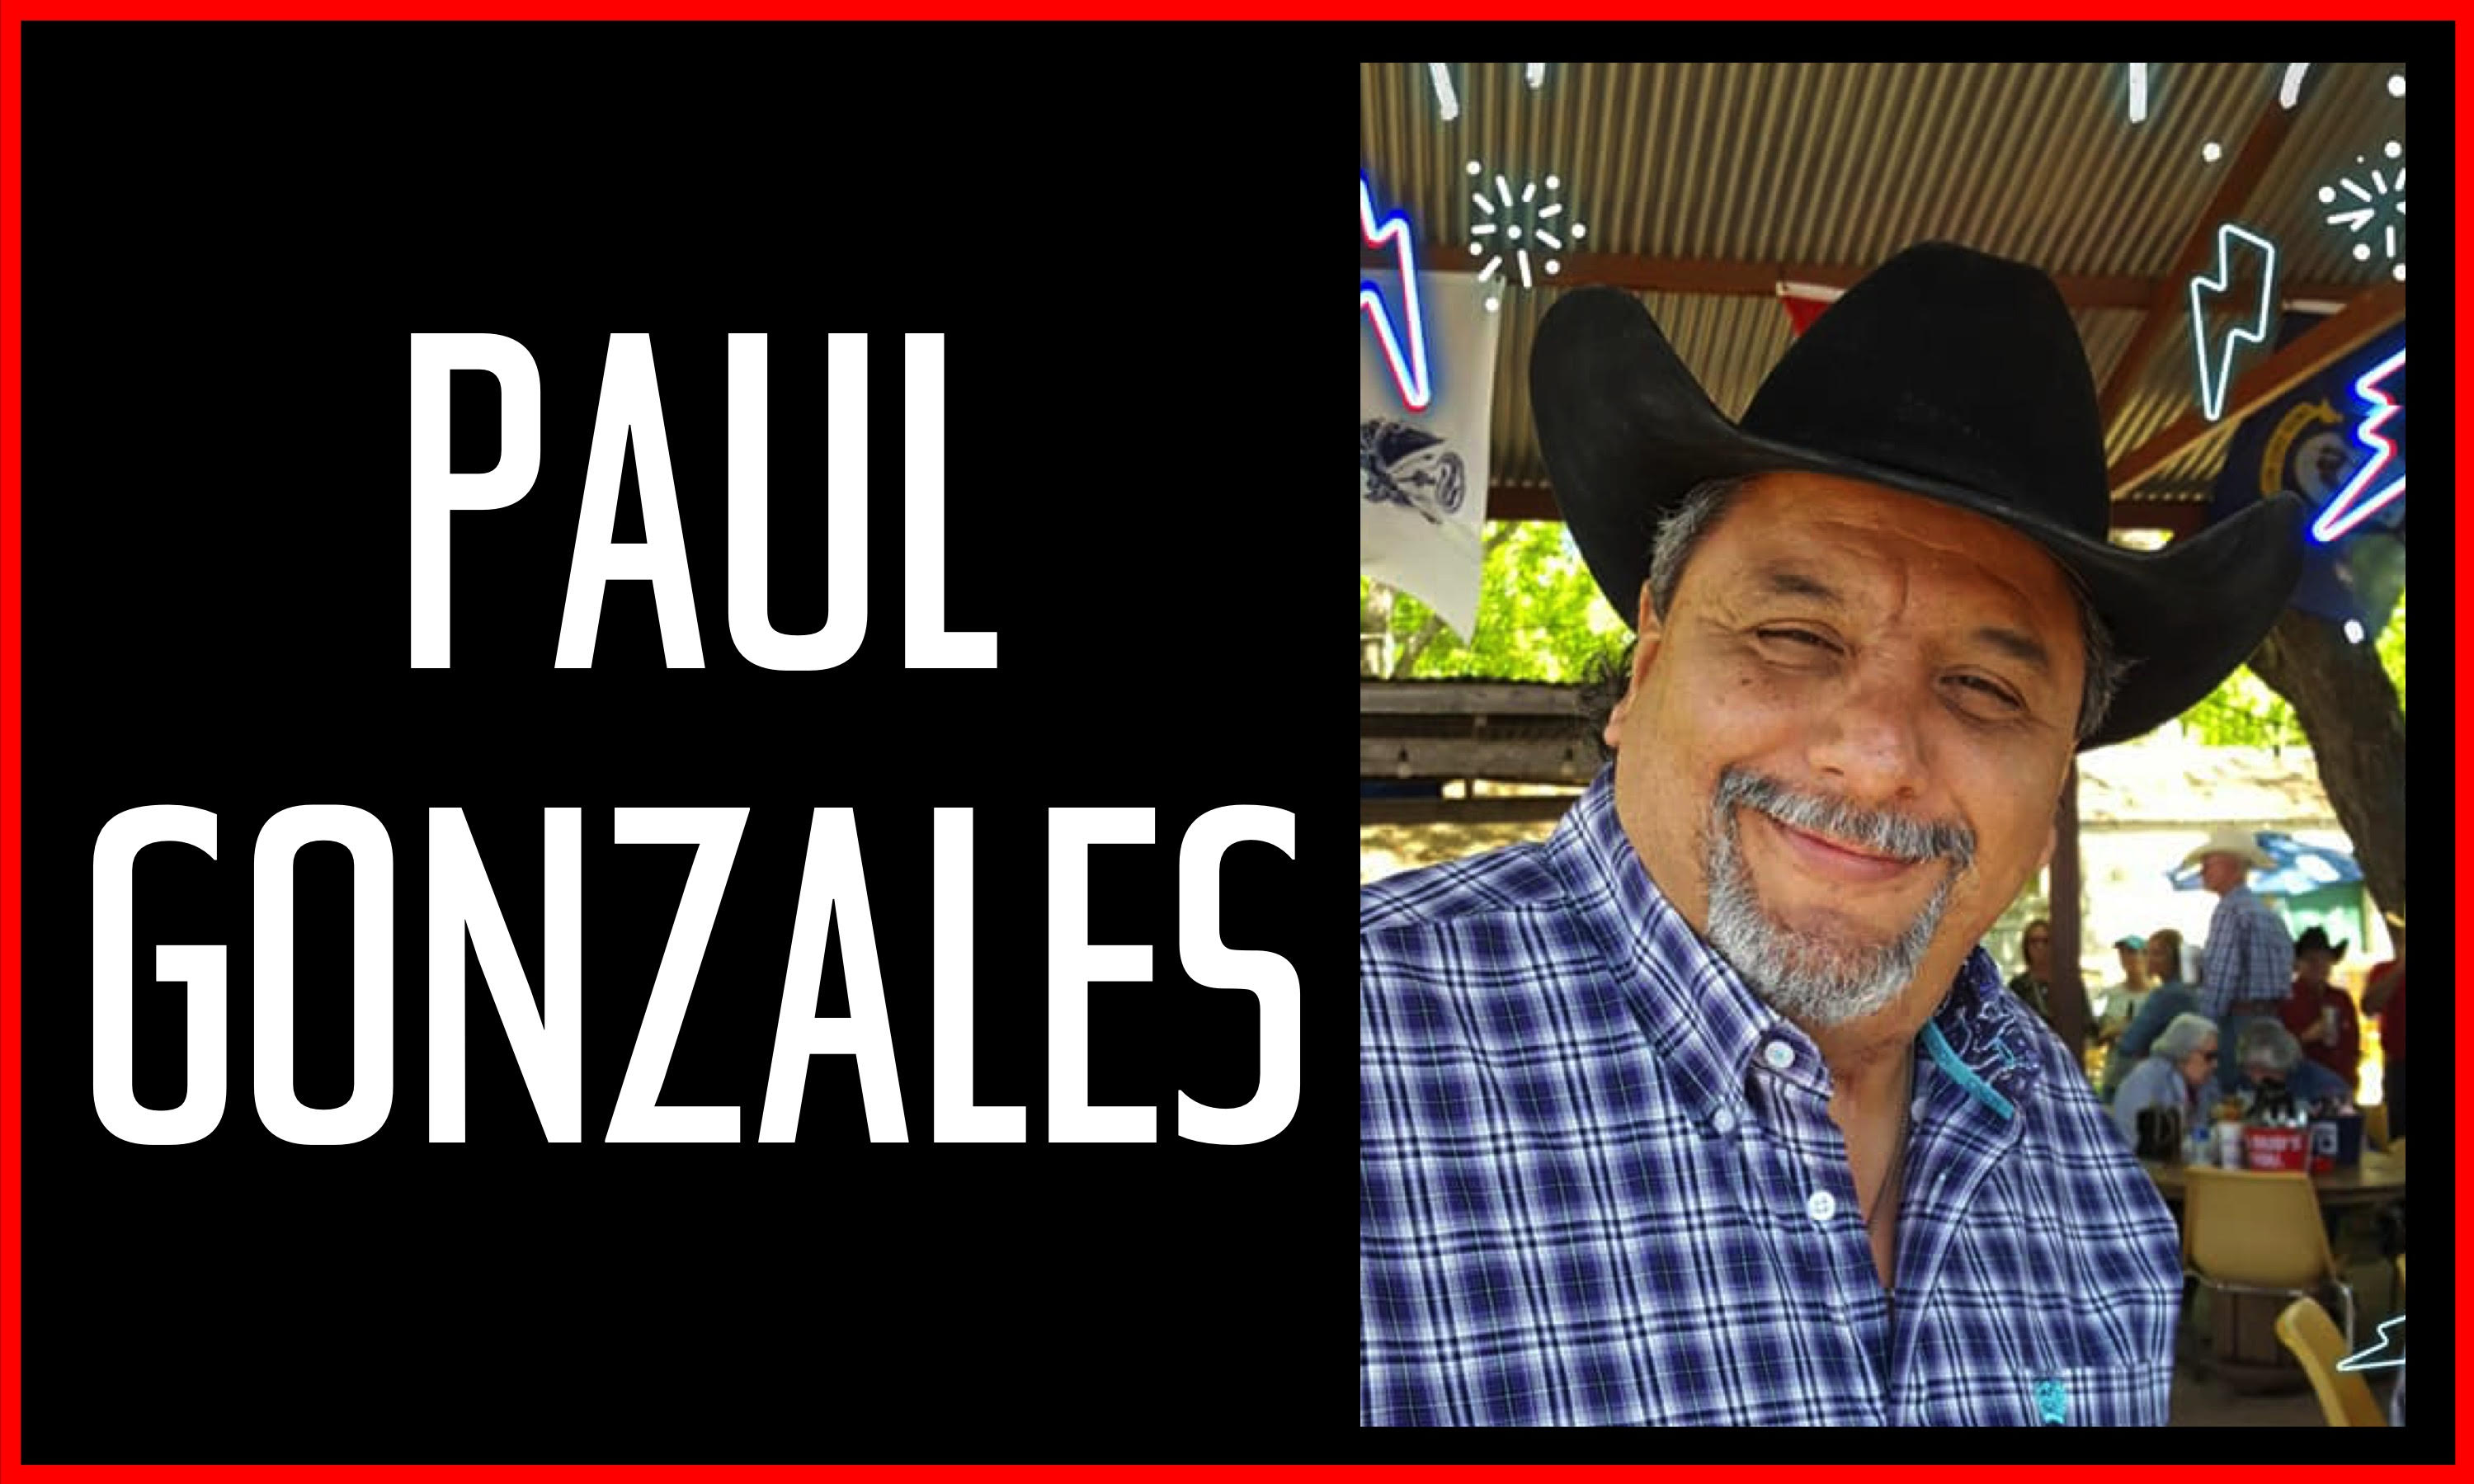 Paul Gonzales